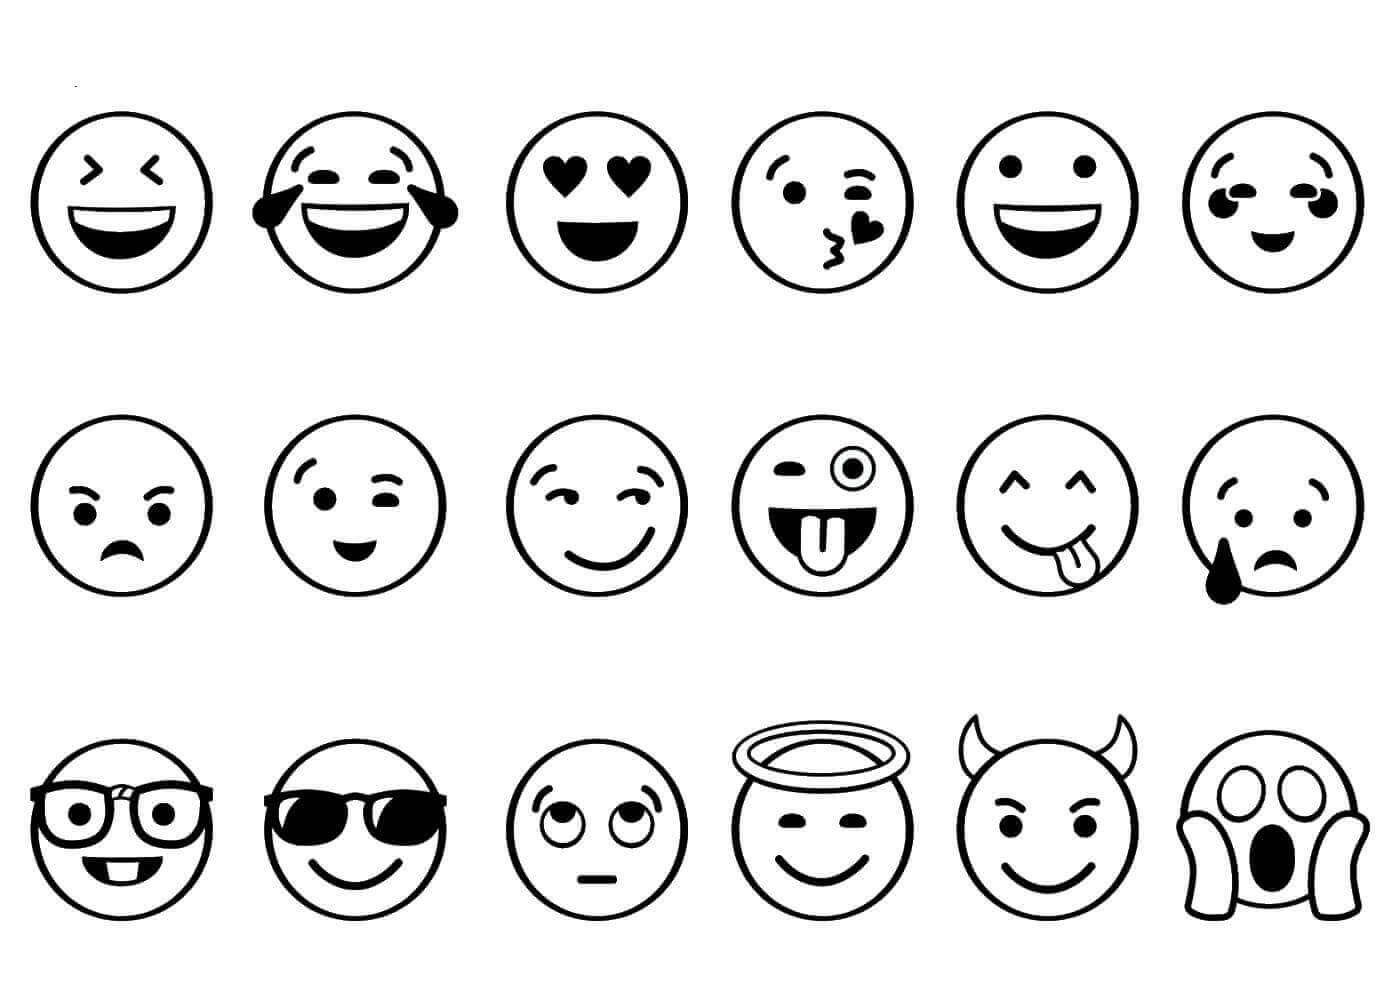 Printable Emoji Coloring Pages
 Free Printable Emoji Coloring Pages